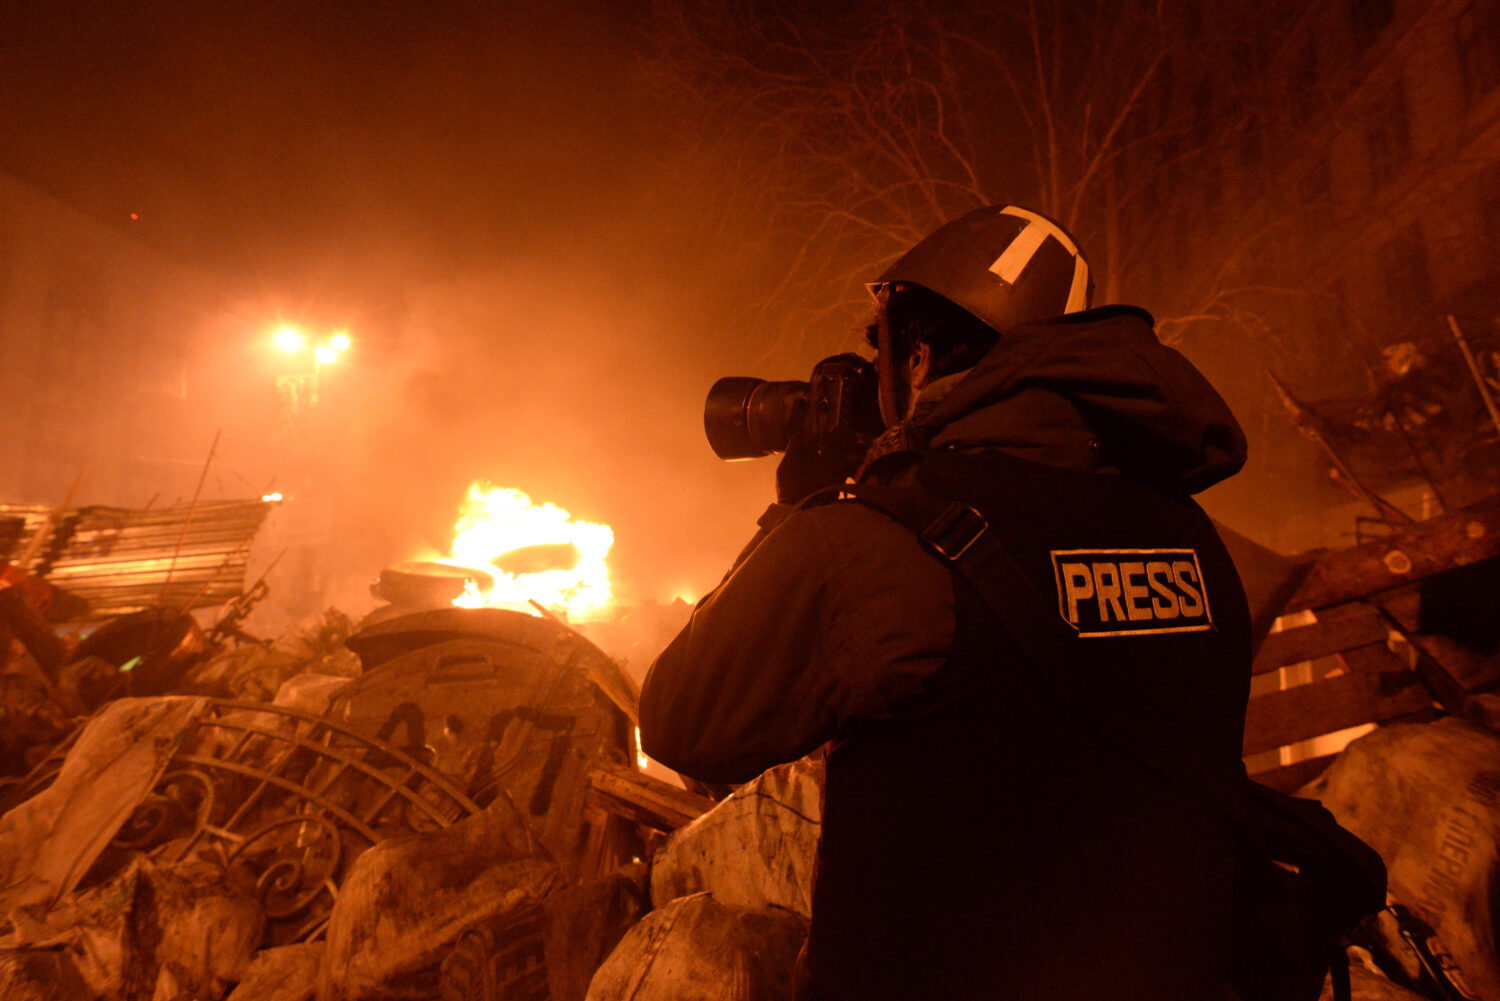 Războiul lui Putin asupra presei. Rusia atacă în mod deliberat jurnaliștii aflați în Ucraina